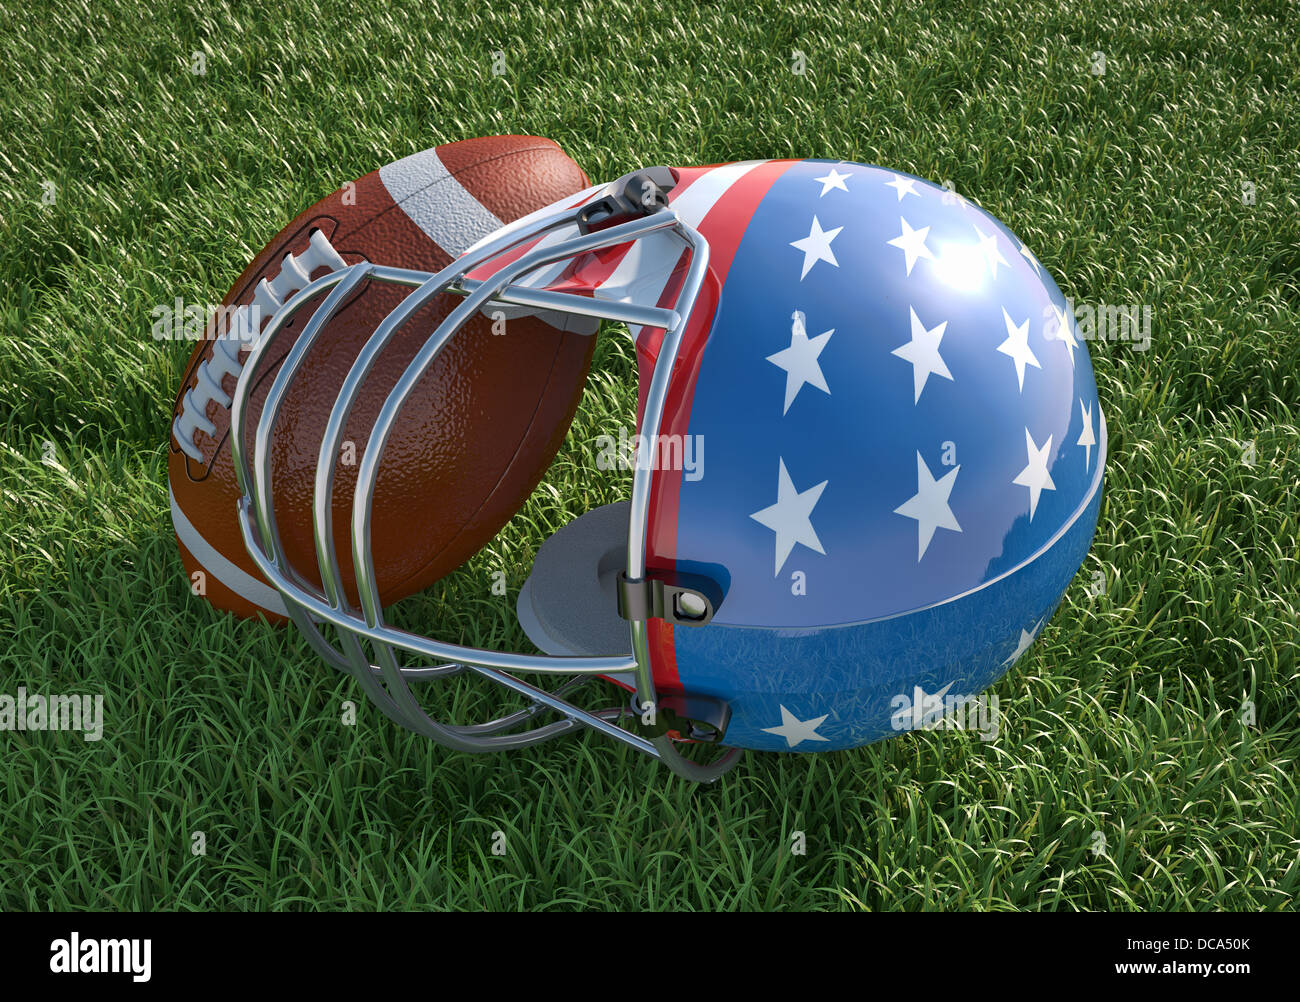 American football helmet décorée comme drapeau américain, avec des étoiles et des rayures et la balle, sur l'herbe. Close up. Banque D'Images